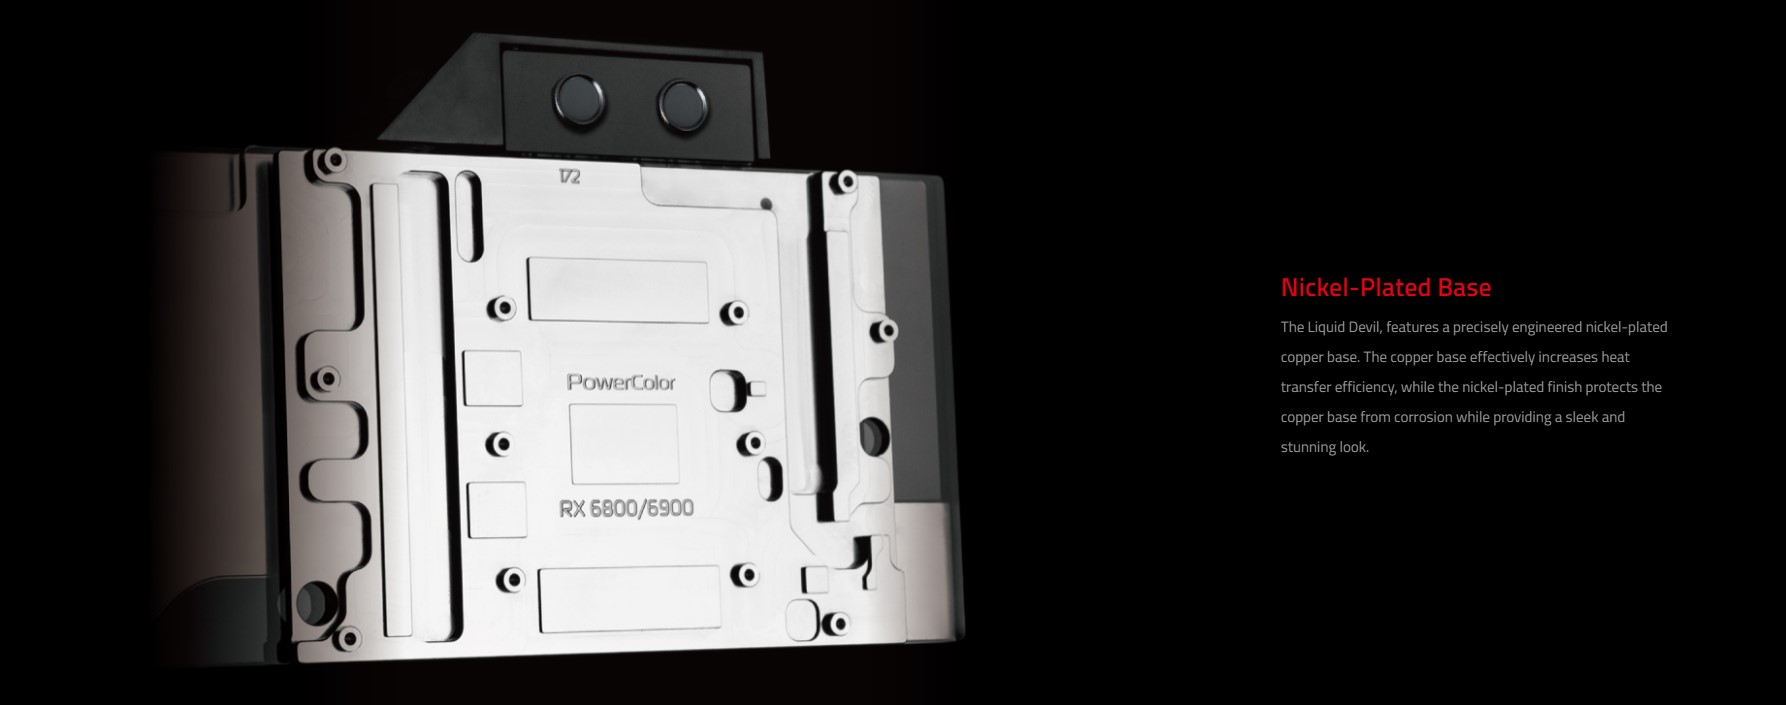 Card màn hình PowerColor RX 6900 XT LIQUID DEVIL